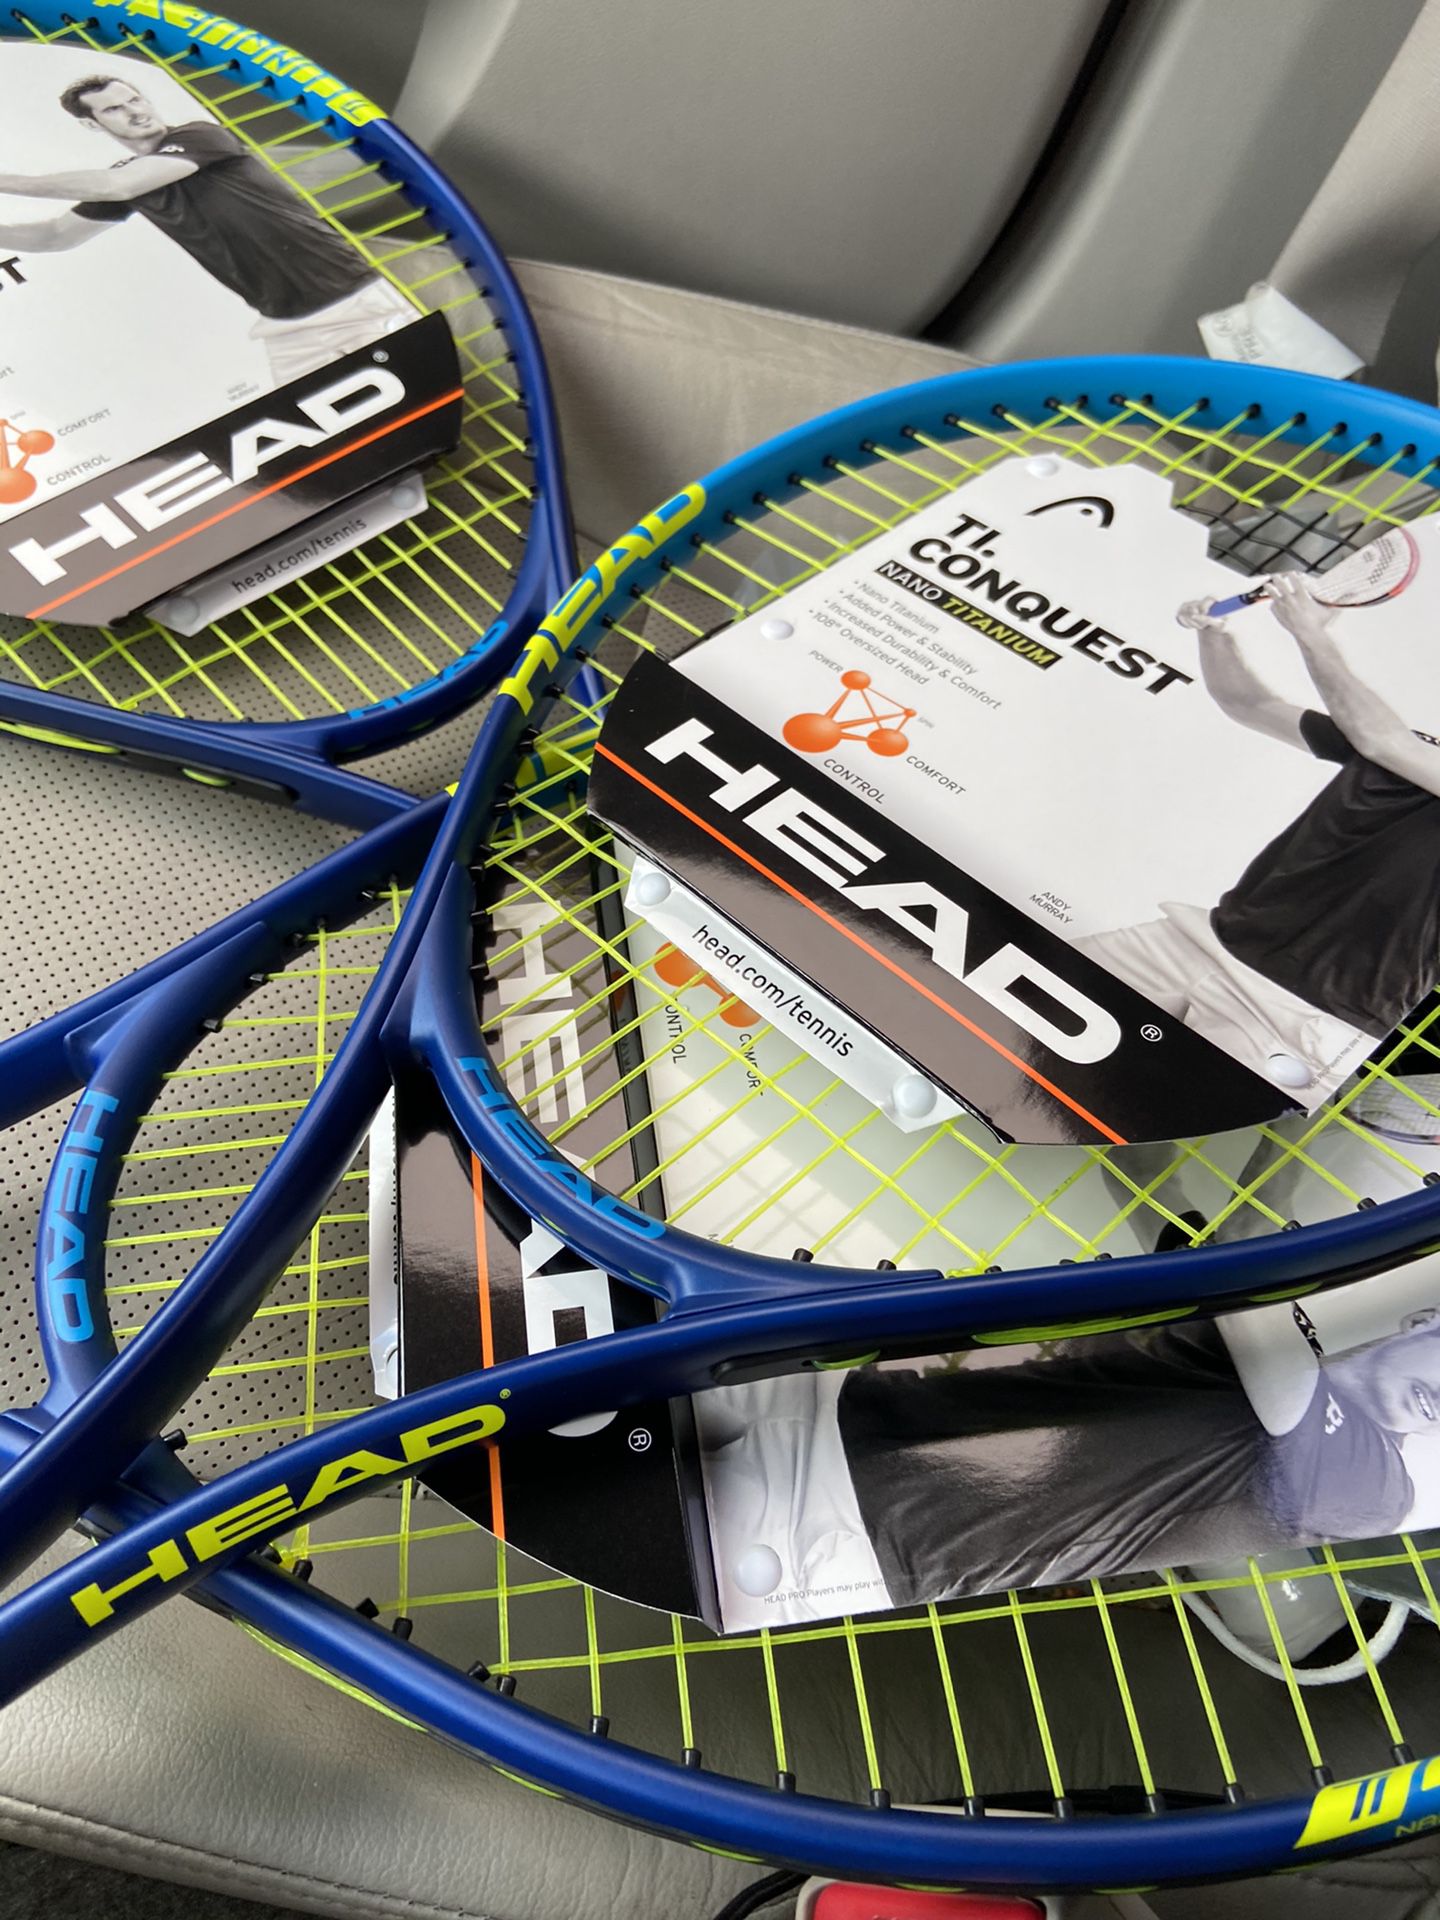 2 new Tennis Rackets